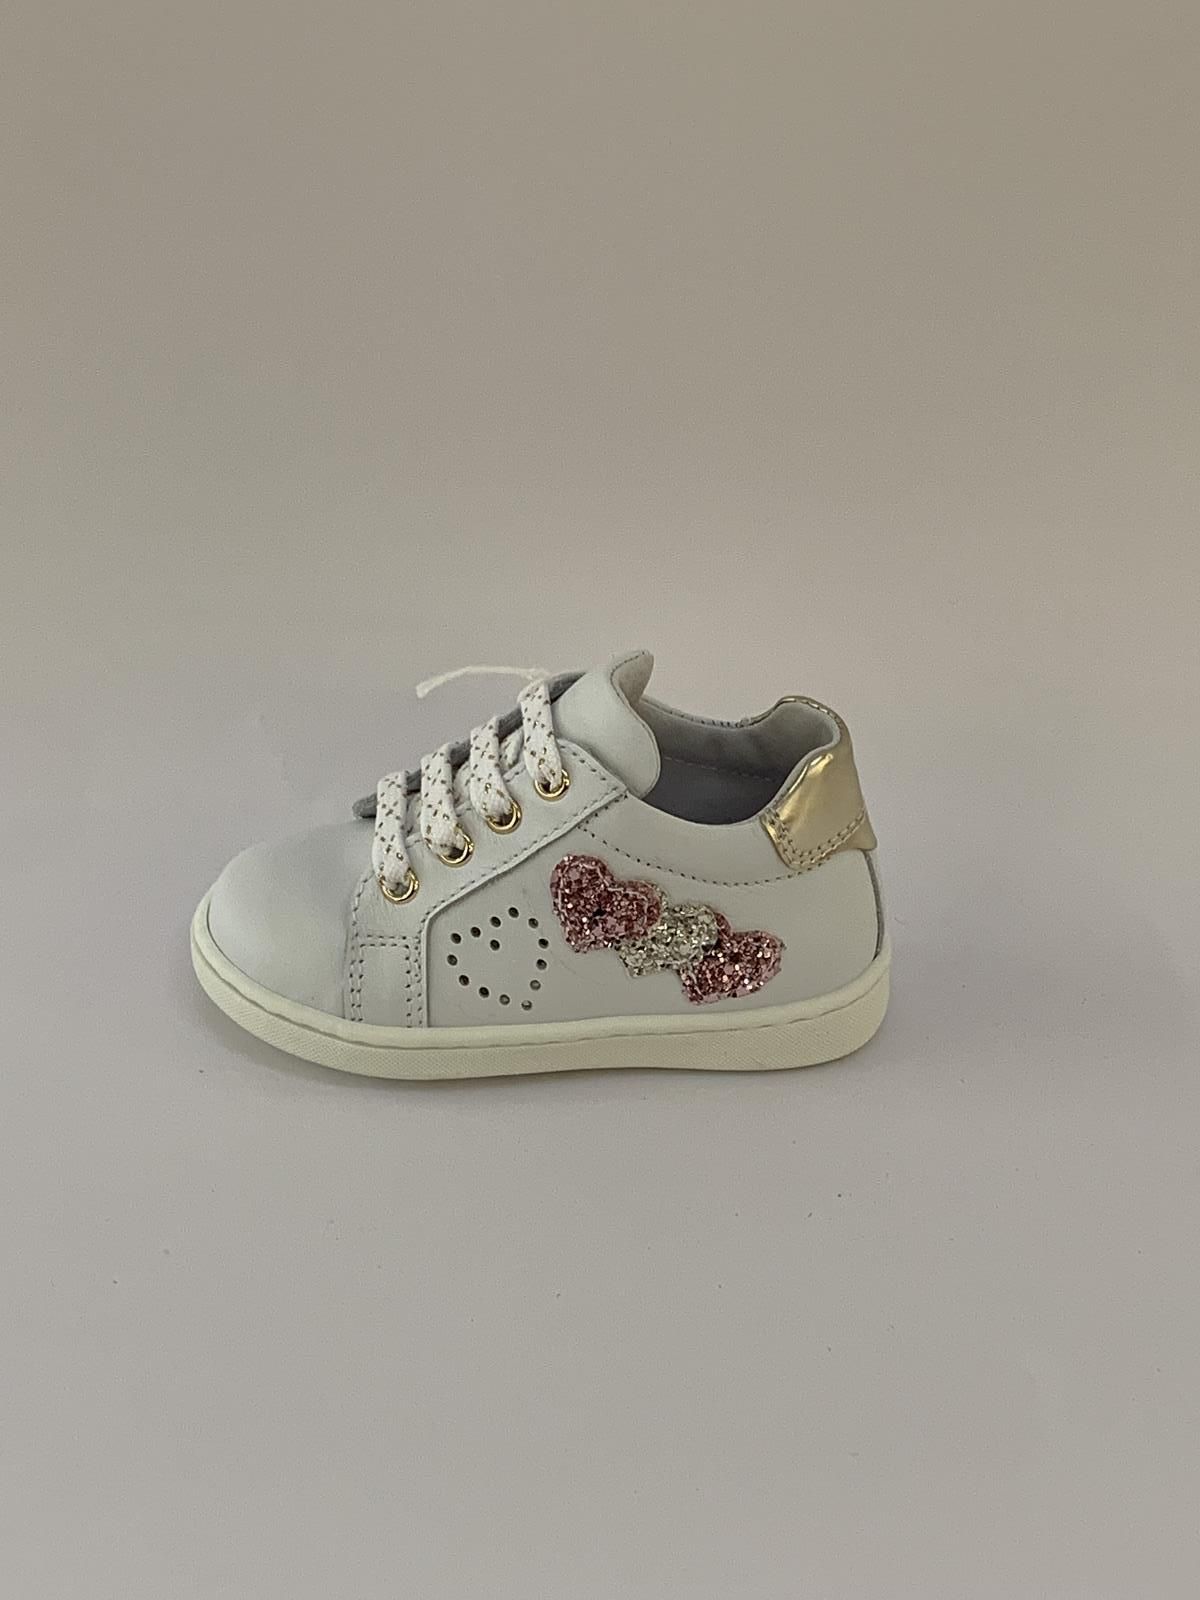 Nero Giardini Sneaker Wit+kleur meisjes (Bottine Glitterhartjes - 2134) - Schoenen Luca